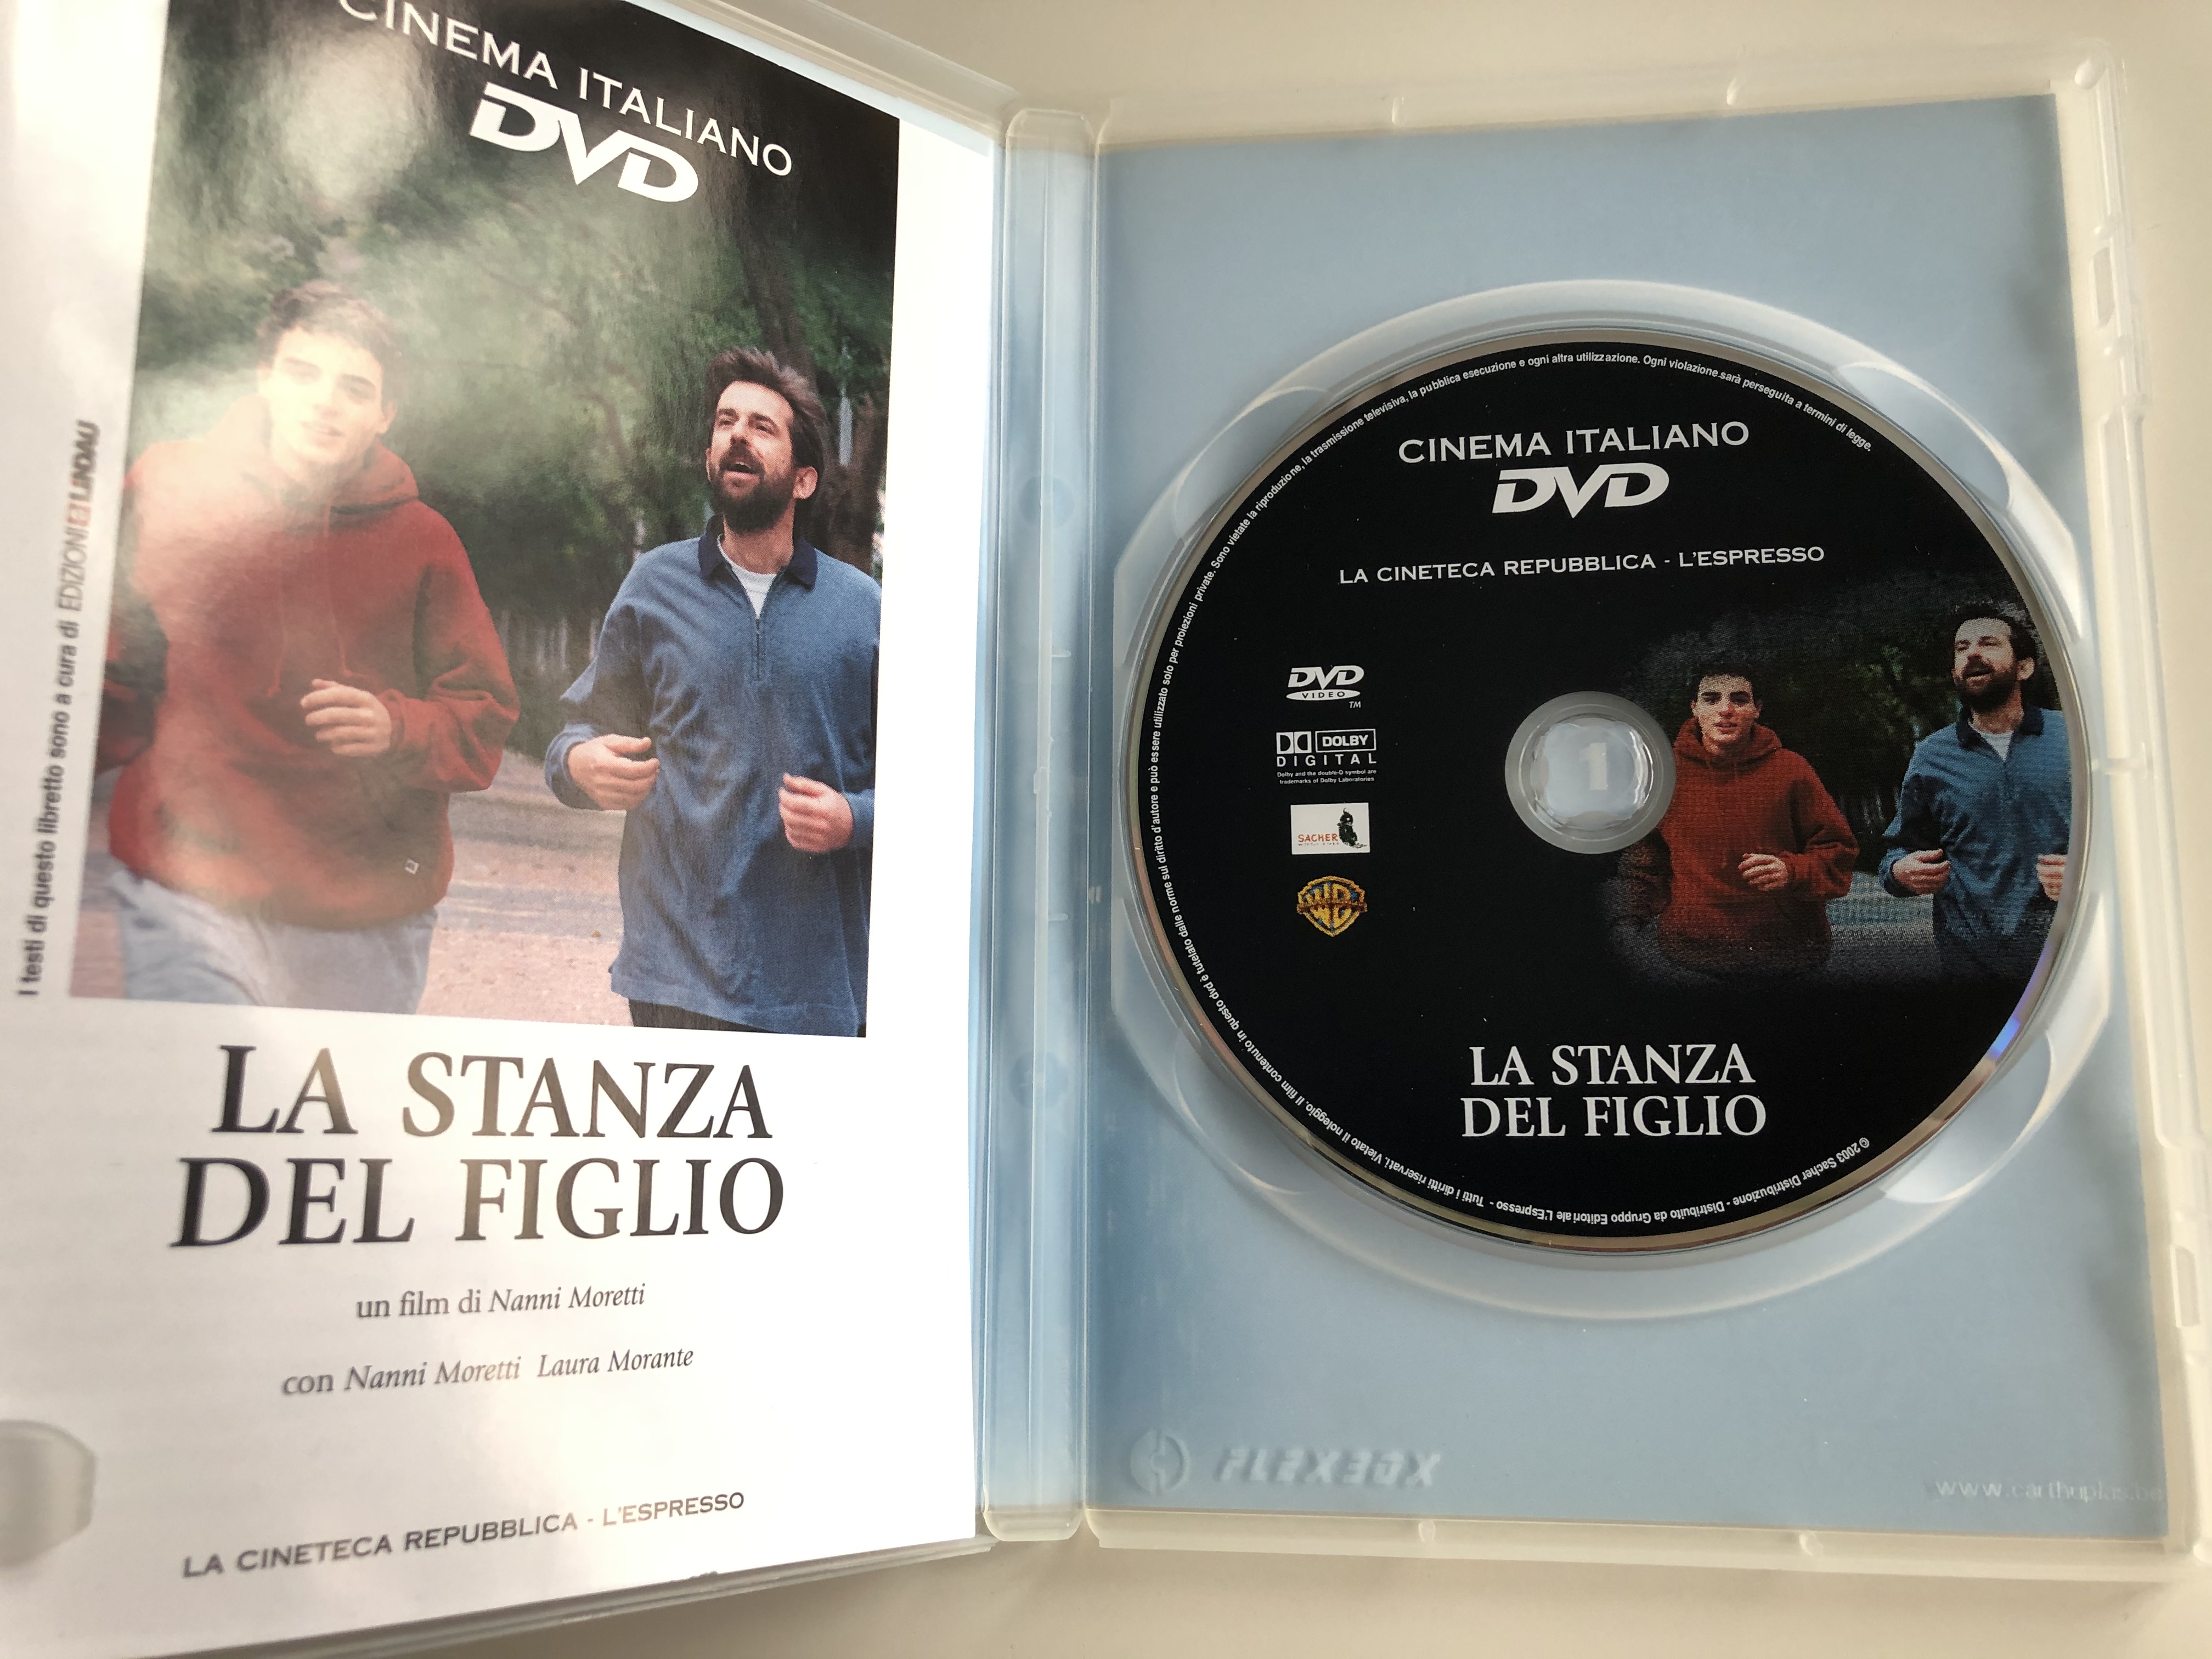 la-stanza-del-figlio-dvd-2001-the-son-s-room-directed-by-nanni-moretti-2.jpg